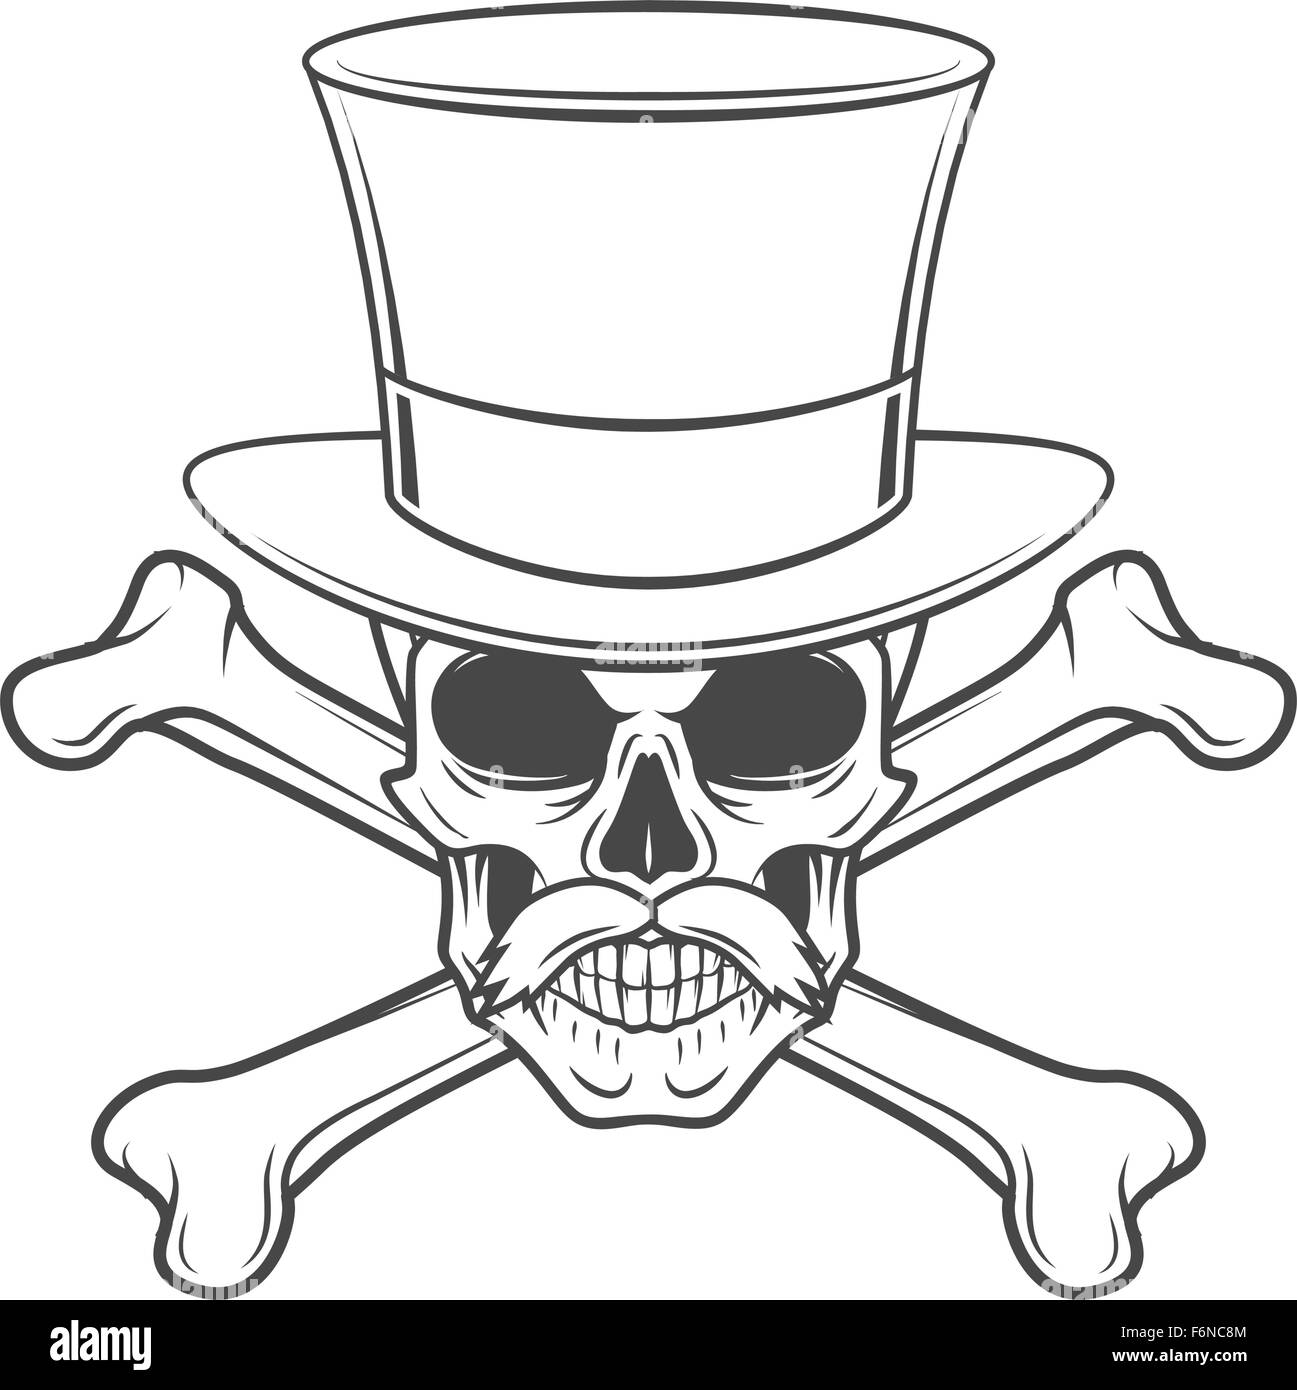 Outlaw Totenkopf mit gekreuzten Knochen Porträt, Schnurrbart und Hi-Hat. Gekreuzten Knochen Headhunter Logo Vorlage. Steampunk-Rover-T-shirt-Insignia-design Stock Vektor